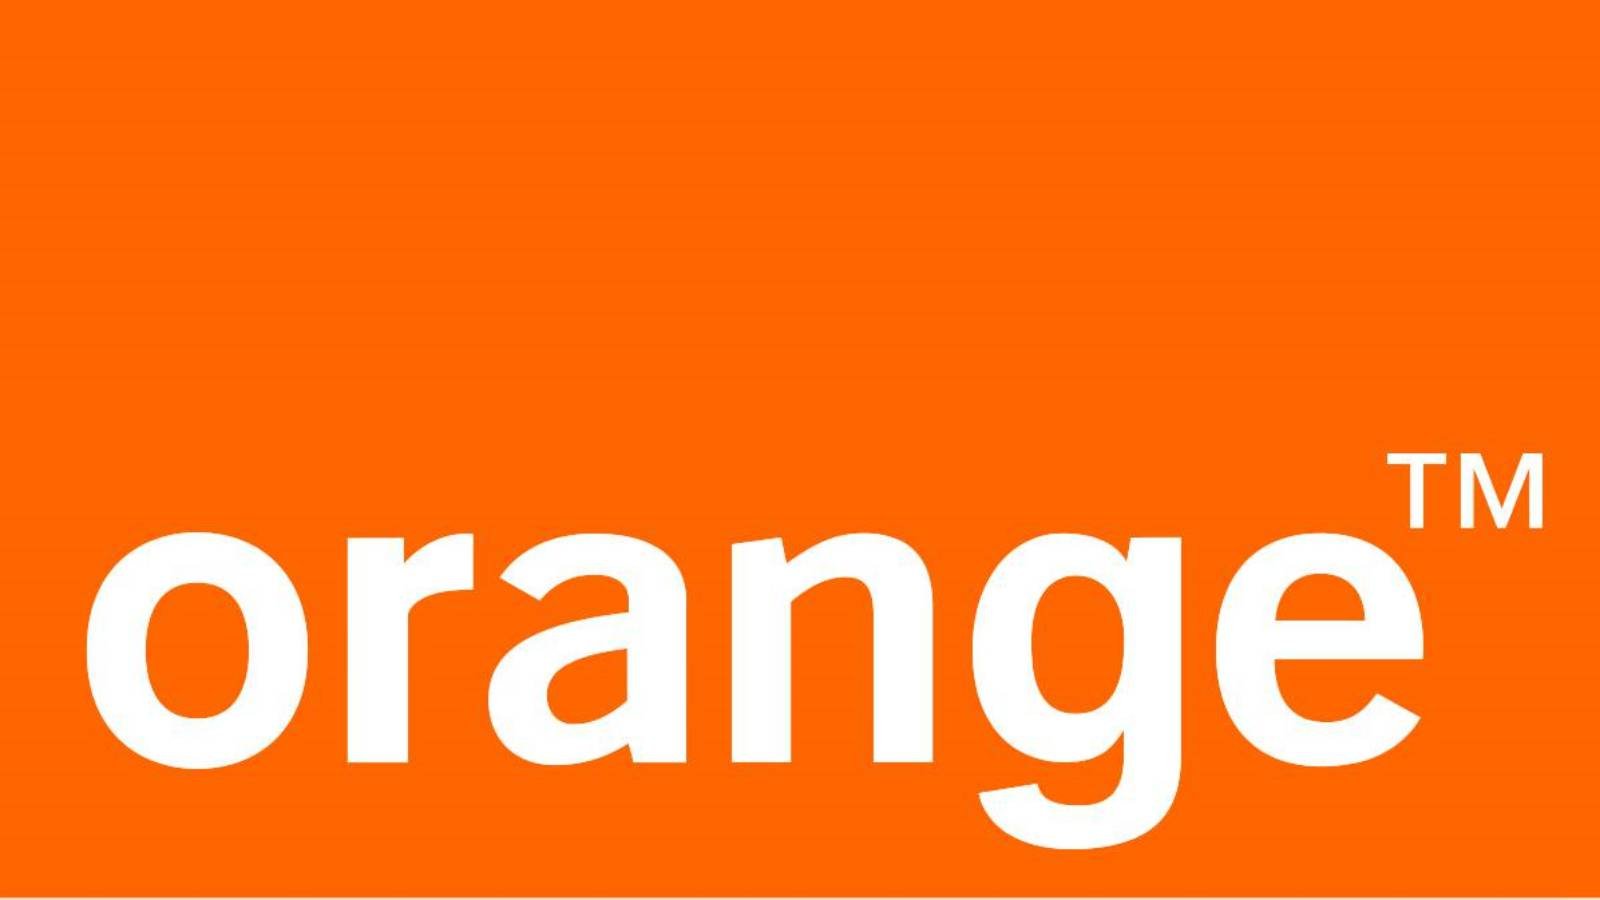 Orange overrasker alle kunder GRATIS millioner af mennesker land